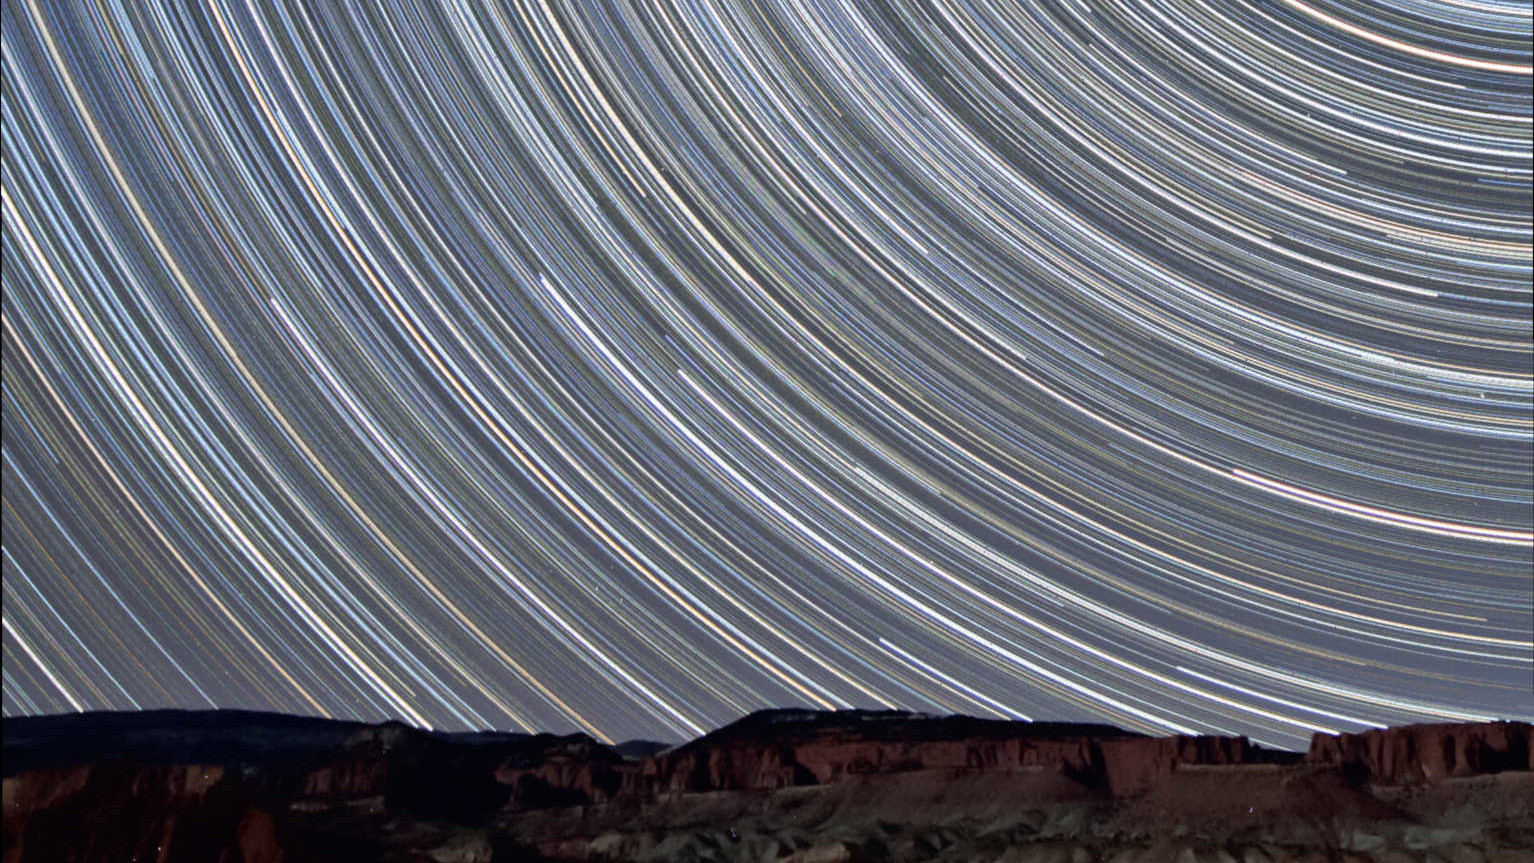 Questa immagine è stata scattata a pochi chilometri dal parco nazionale di Capitol Reef, nello Utah (USA), guardando verso nord, e mostra il percorso delle stelle sopra le rocce di arenaria rossa illuminate dalla Luna crescente. Per ottenerla sono stati combinati 350 scatti con un tempo di esposizione di 90 secondi ciascuno (tempo di esposizione totale: 525 minuti = 8,75 ore). L'immagine è stata scattata con un obiettivo 10-20 mm (a 10 mm e f/4) su una reflex digitale Canon 450D. U. Dittler